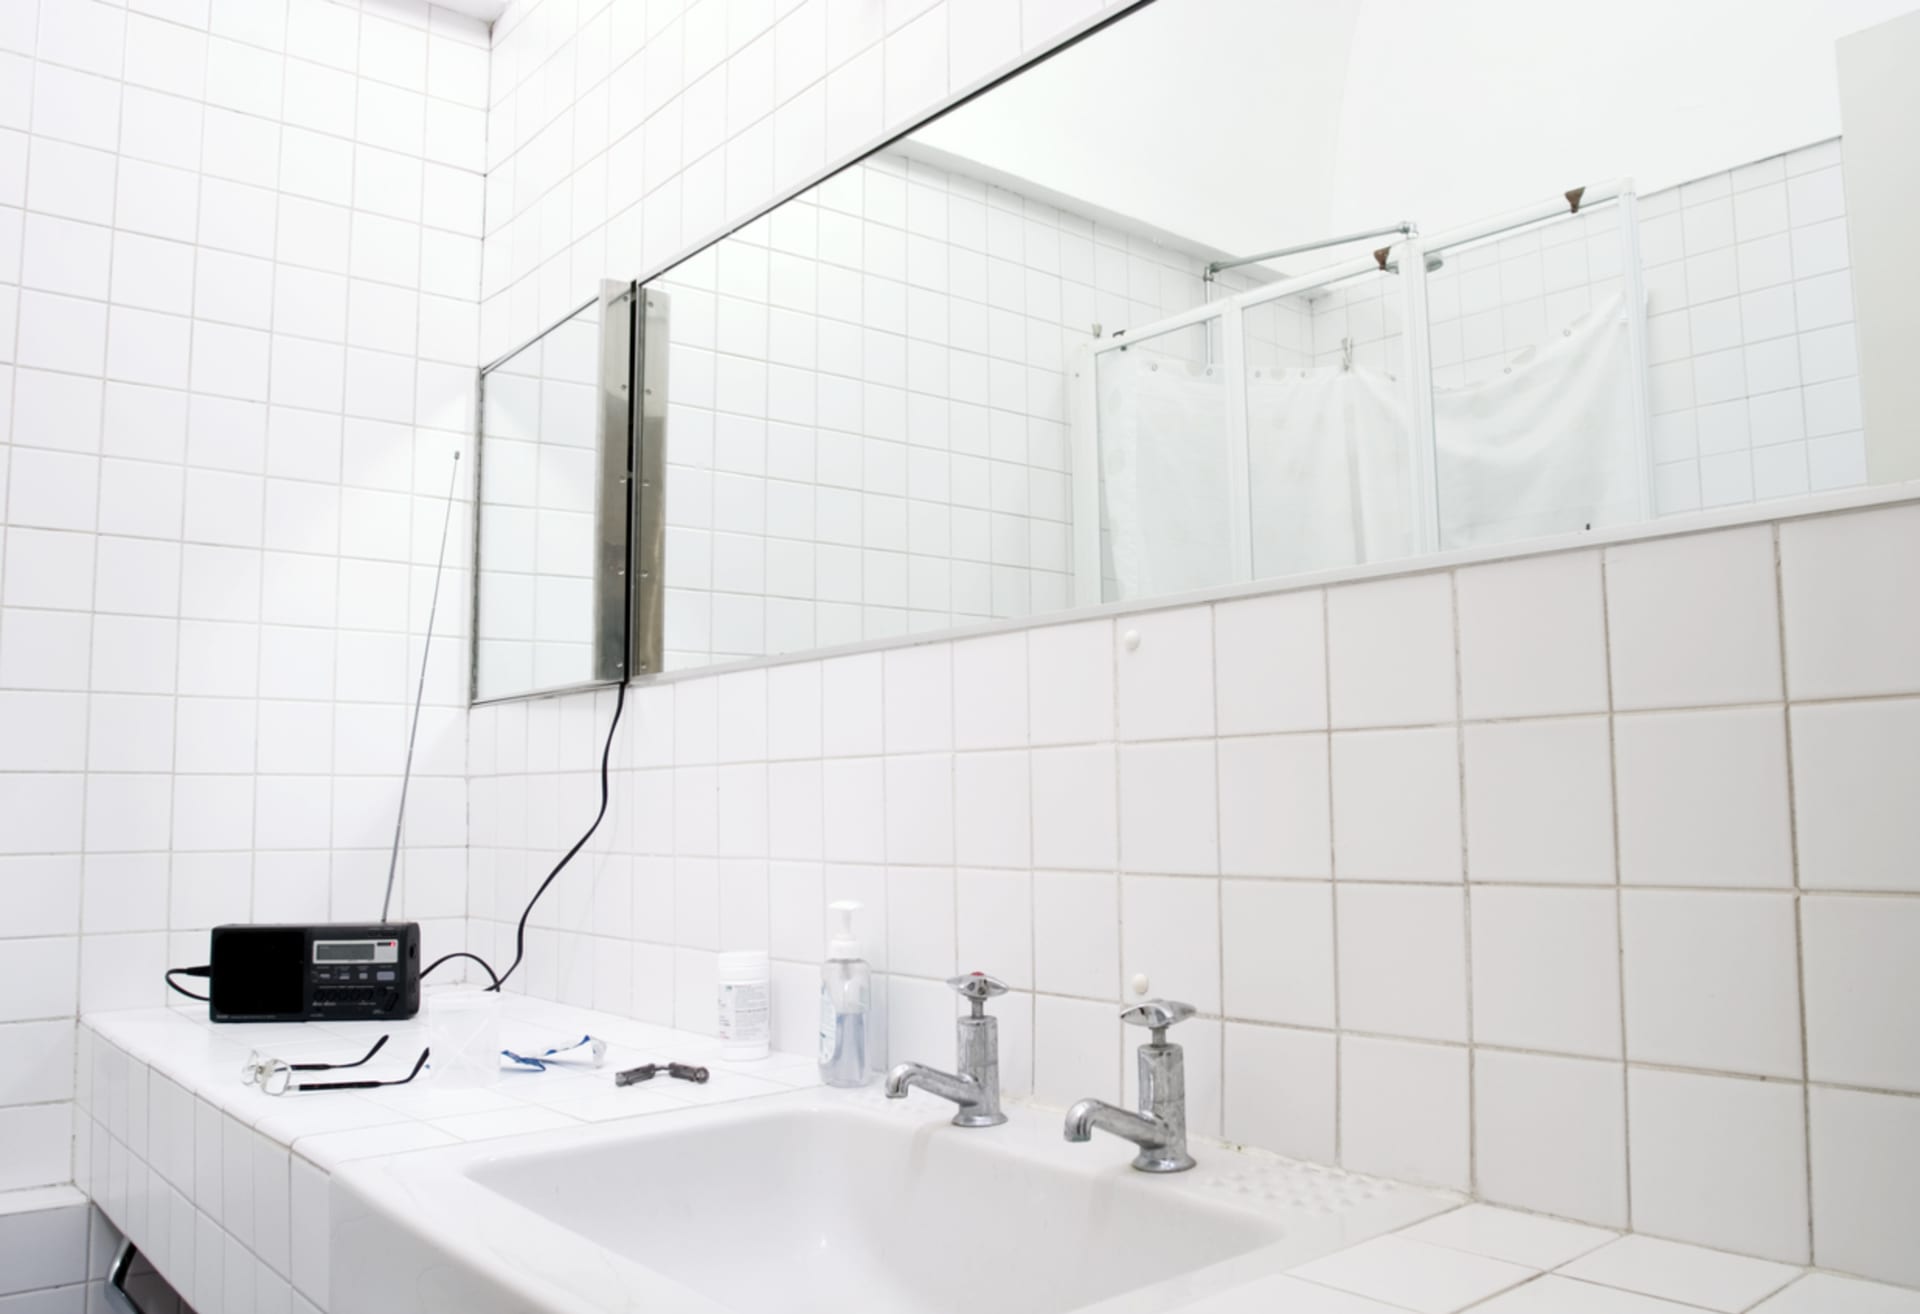 Elektronika v koupelně nemá co dělat, protože vysoká vlhkost vzduchu ji poškozuje. Naštěstí existují vodotěsné přístroje, kterým pobyt v koupelně neuškodí.